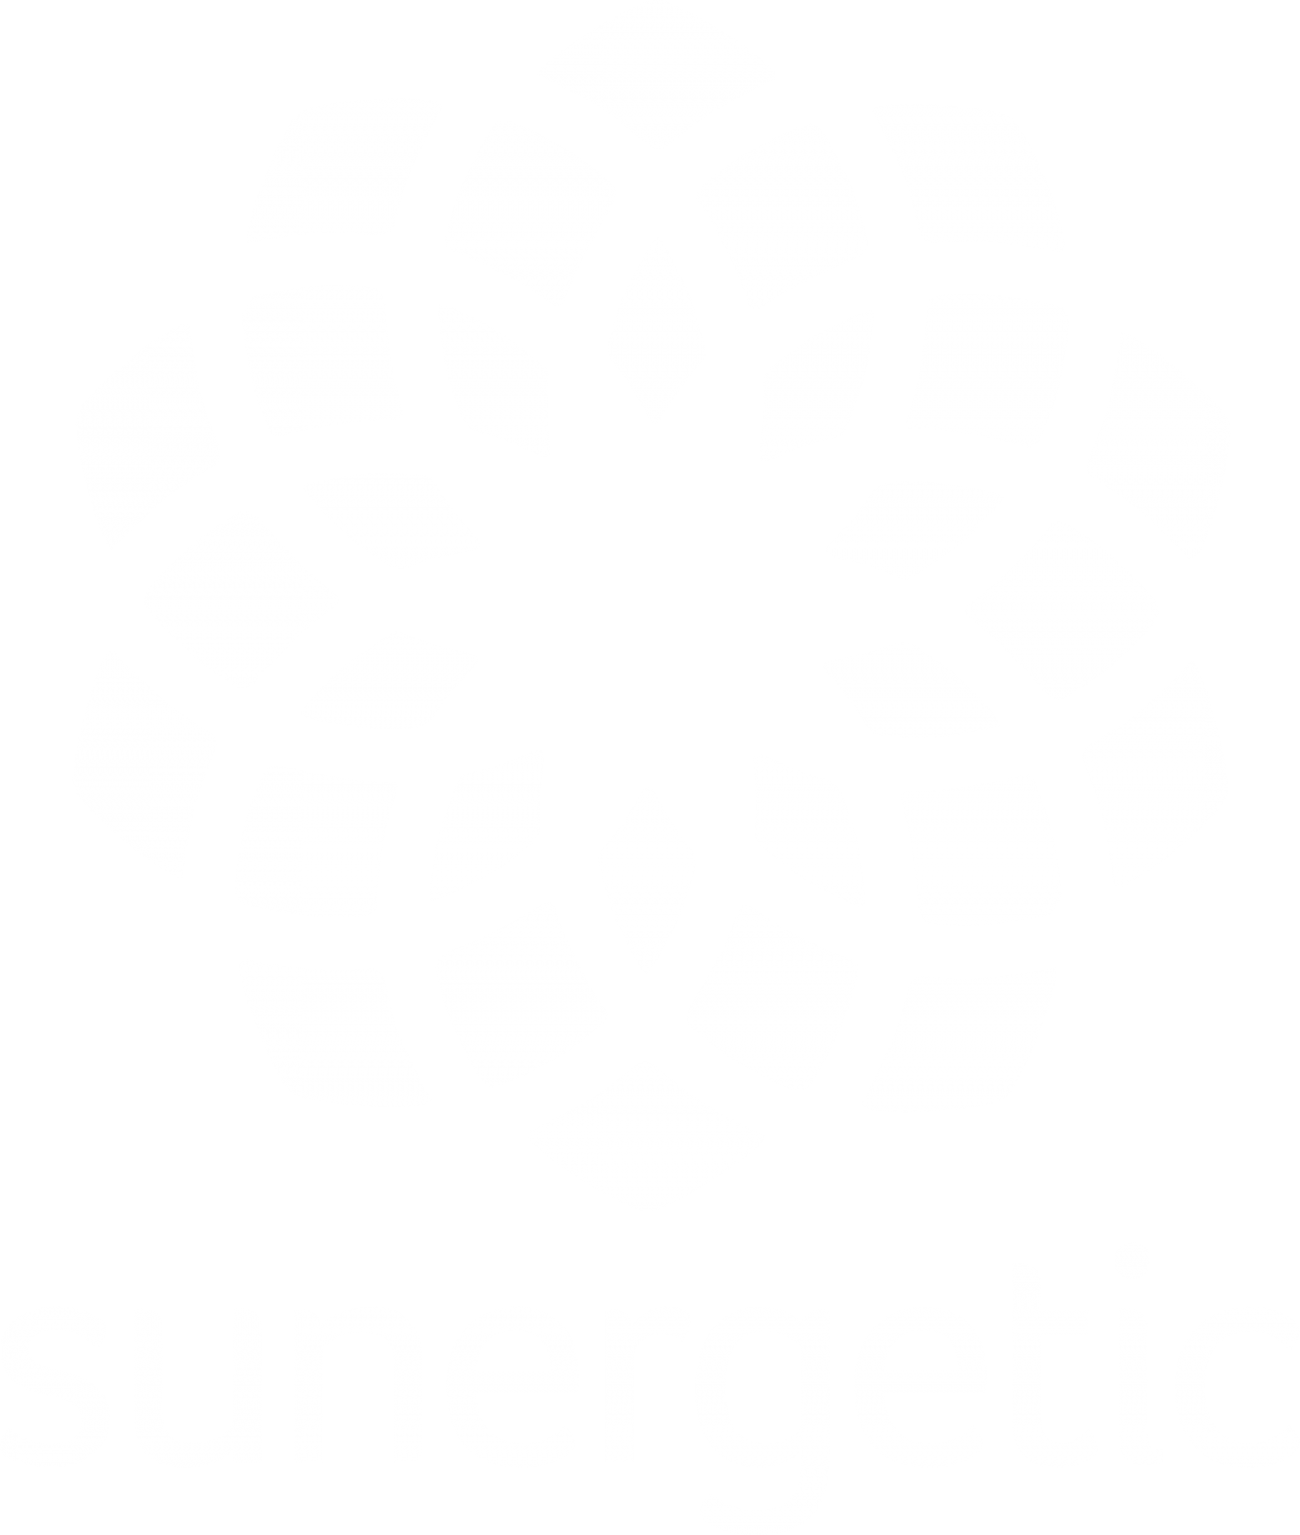 Sunergetic_logo_white